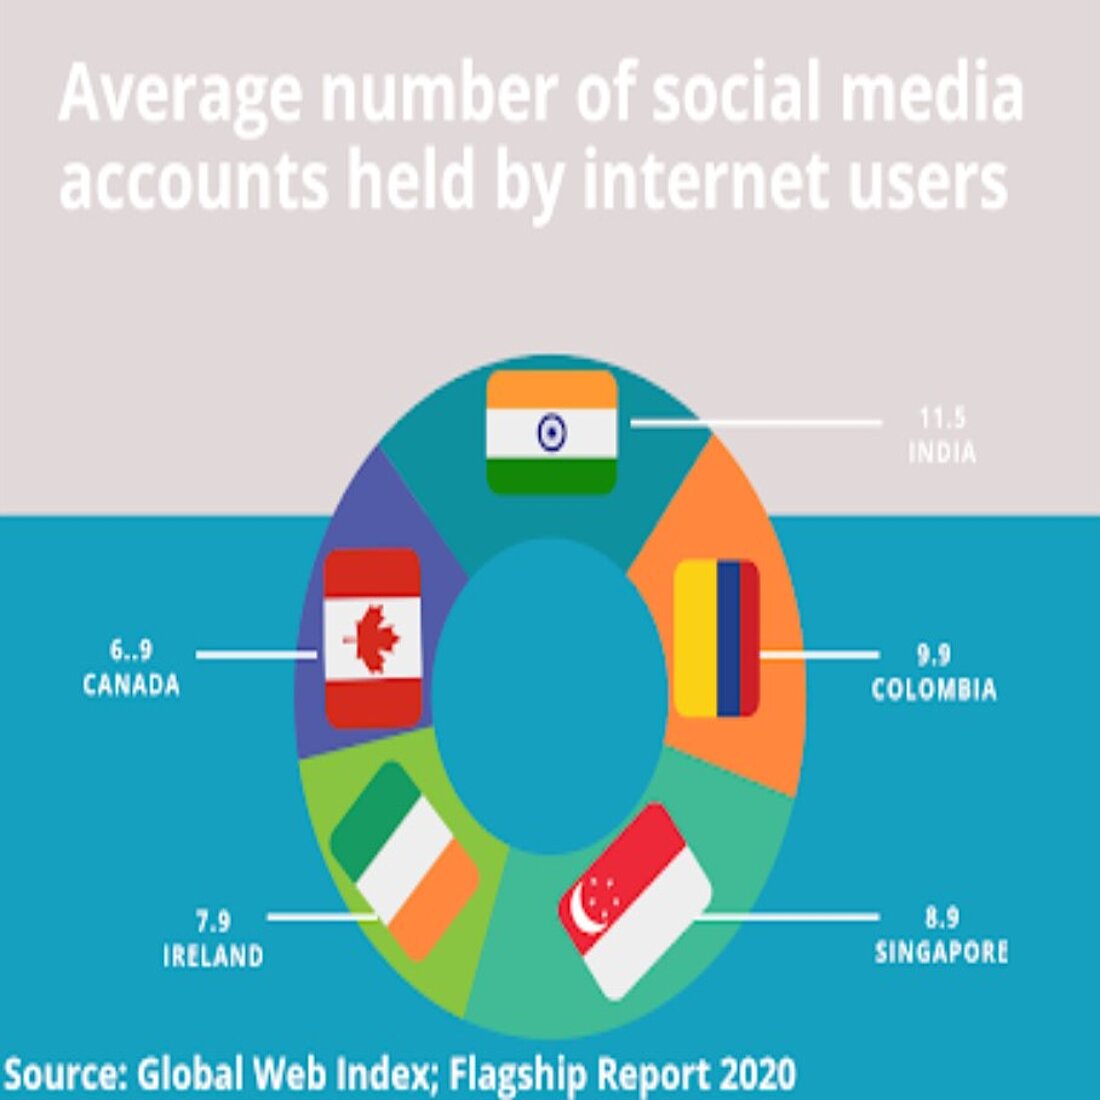 Analyse der sozialen Medien: durchschnittliche Anzahl der Konten von Internetnutzern in den sozialen Medien